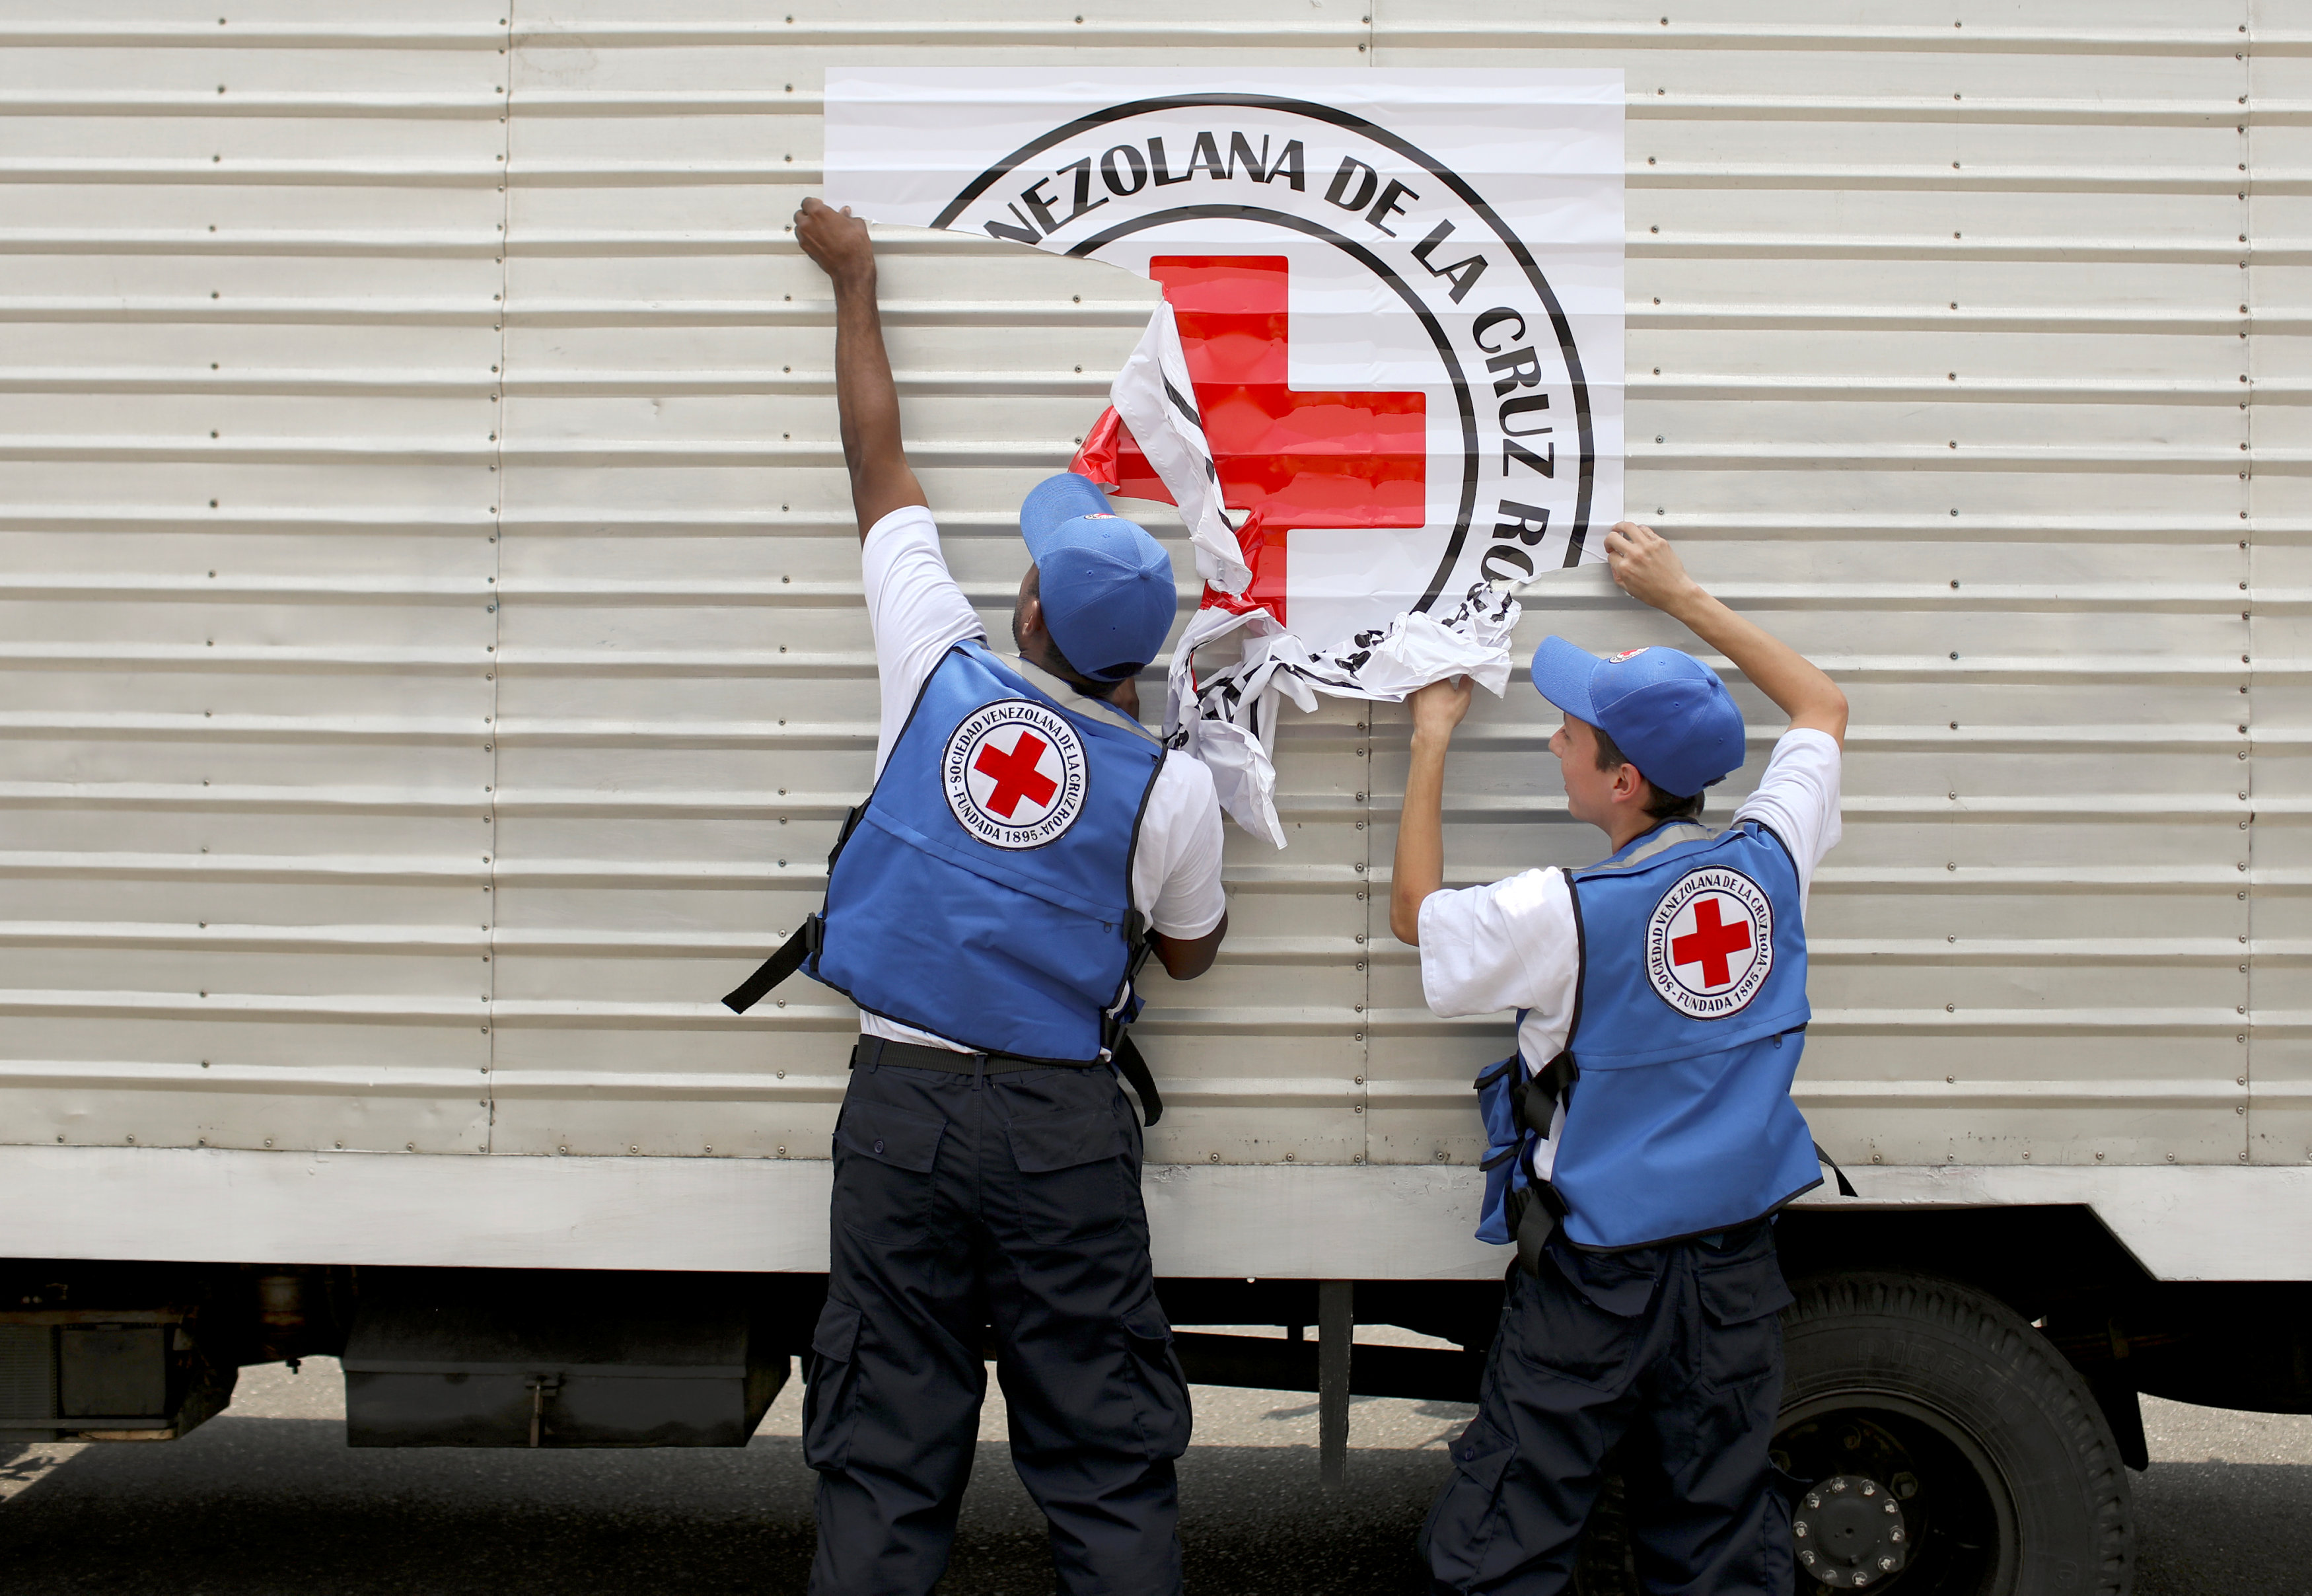 Denuncian que la Cruz Roja todavía no reparte la ayuda humanitaria en Venezuela